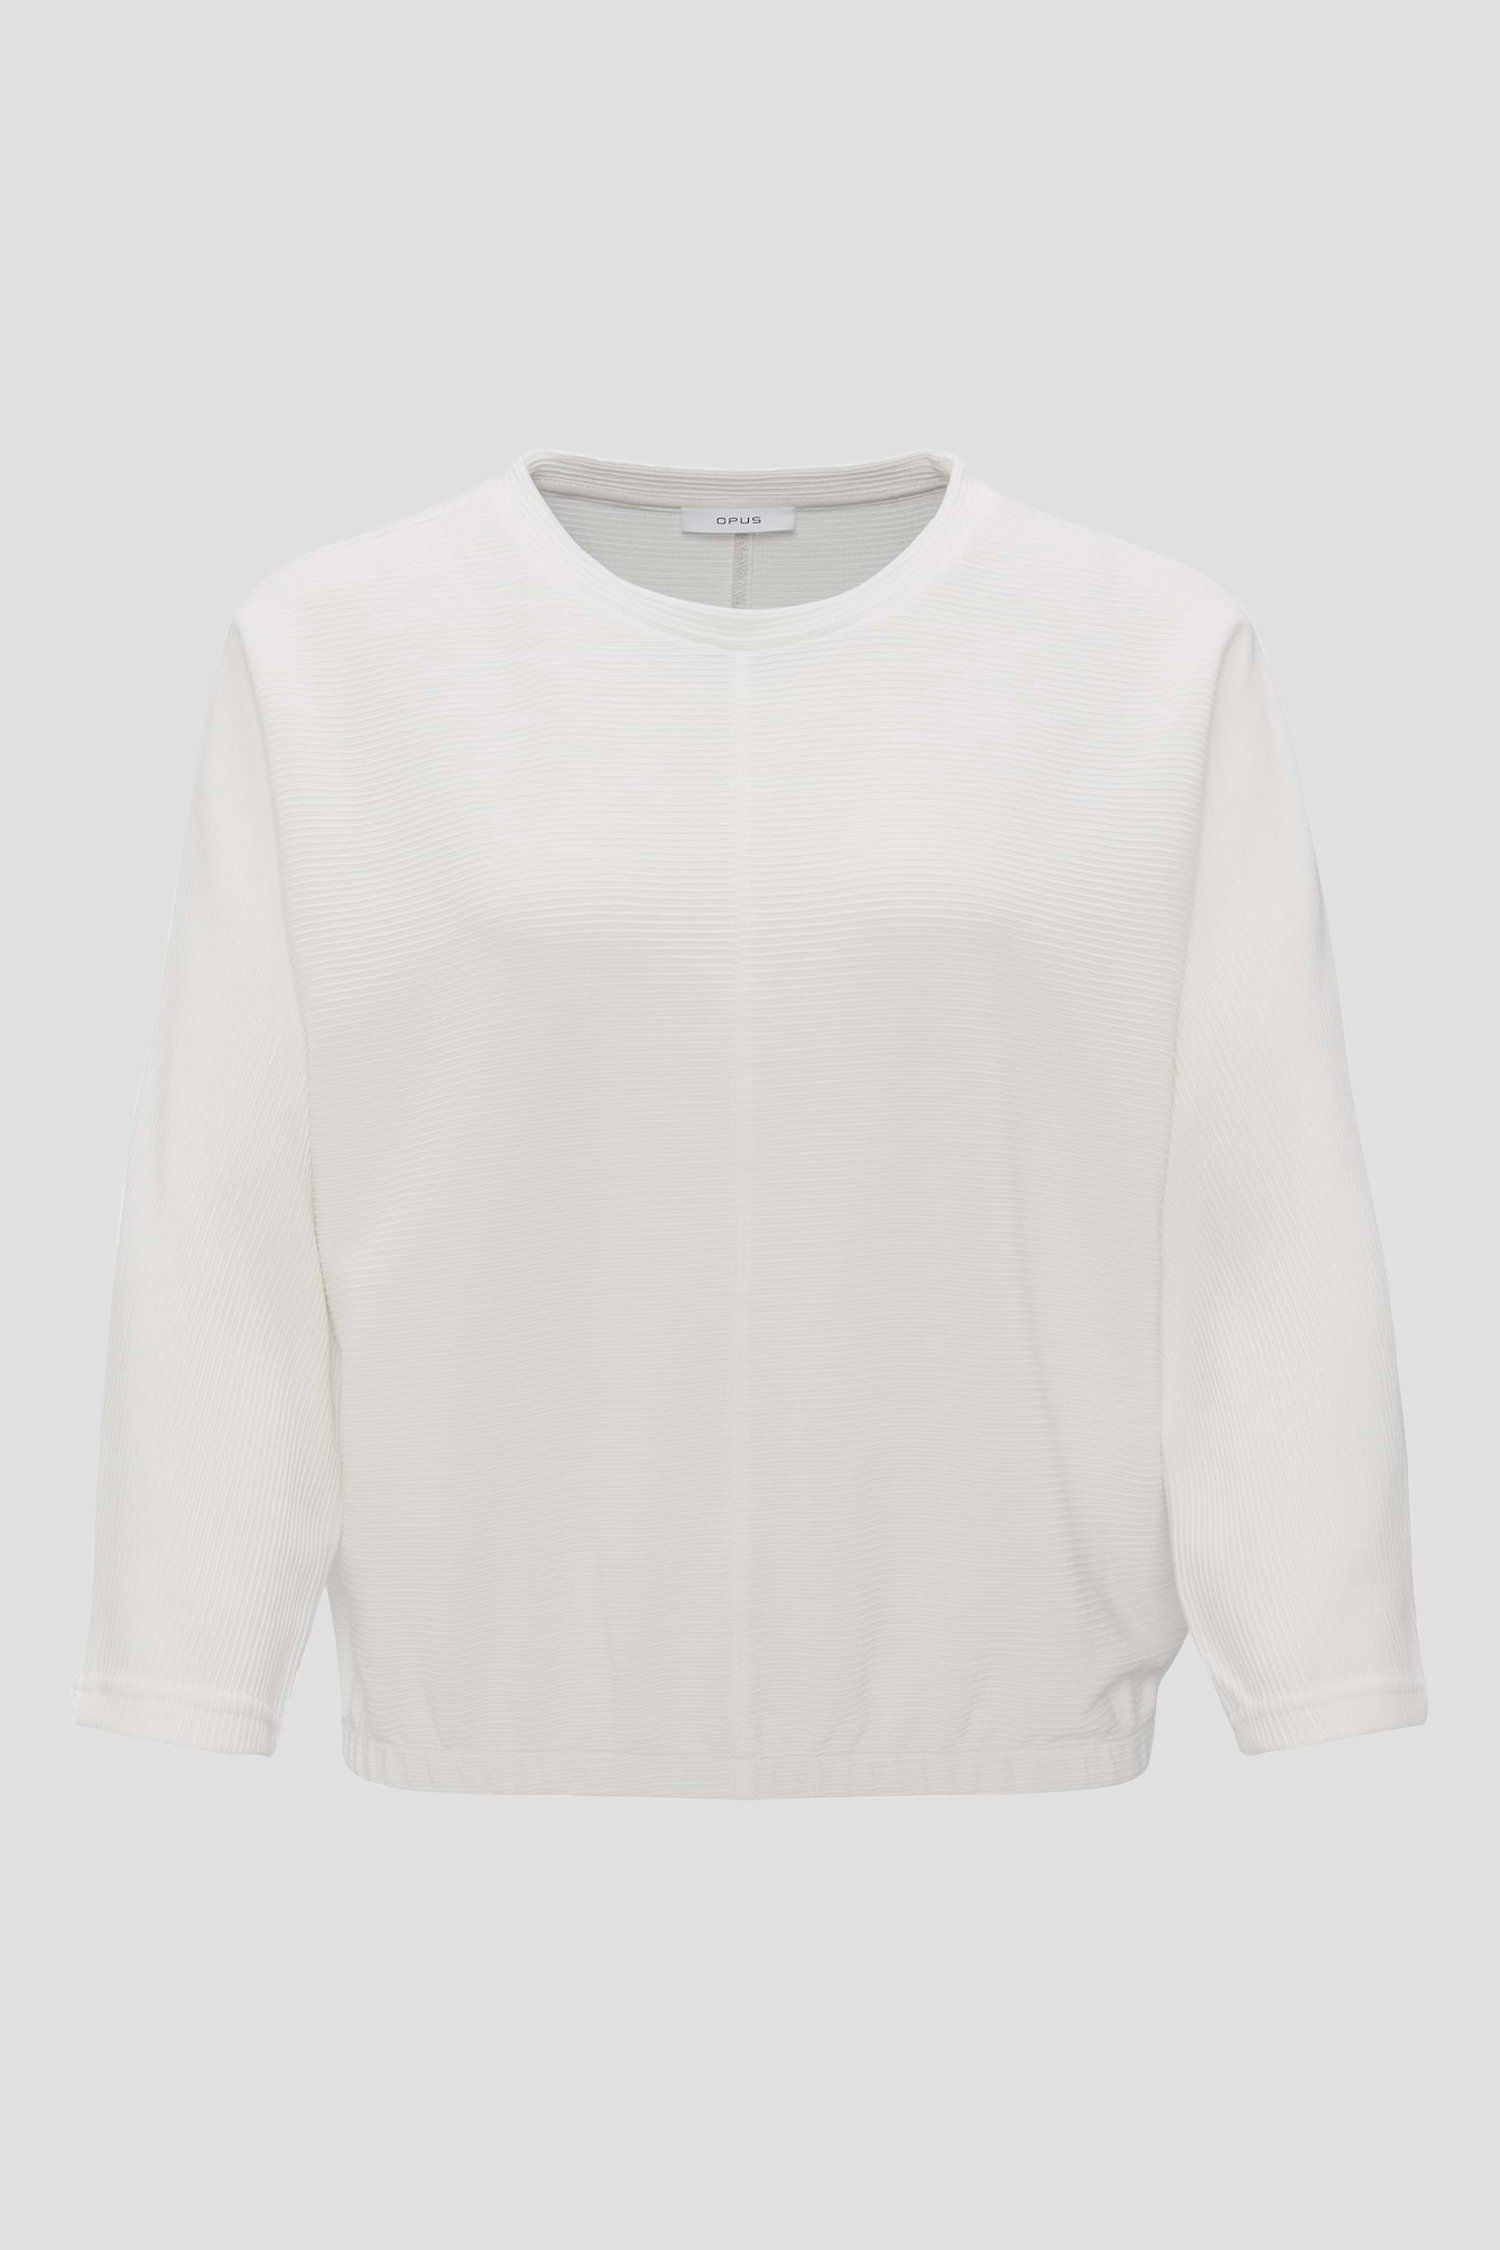 Wit T-shirt met gestreept patroon van Opus voor Dames